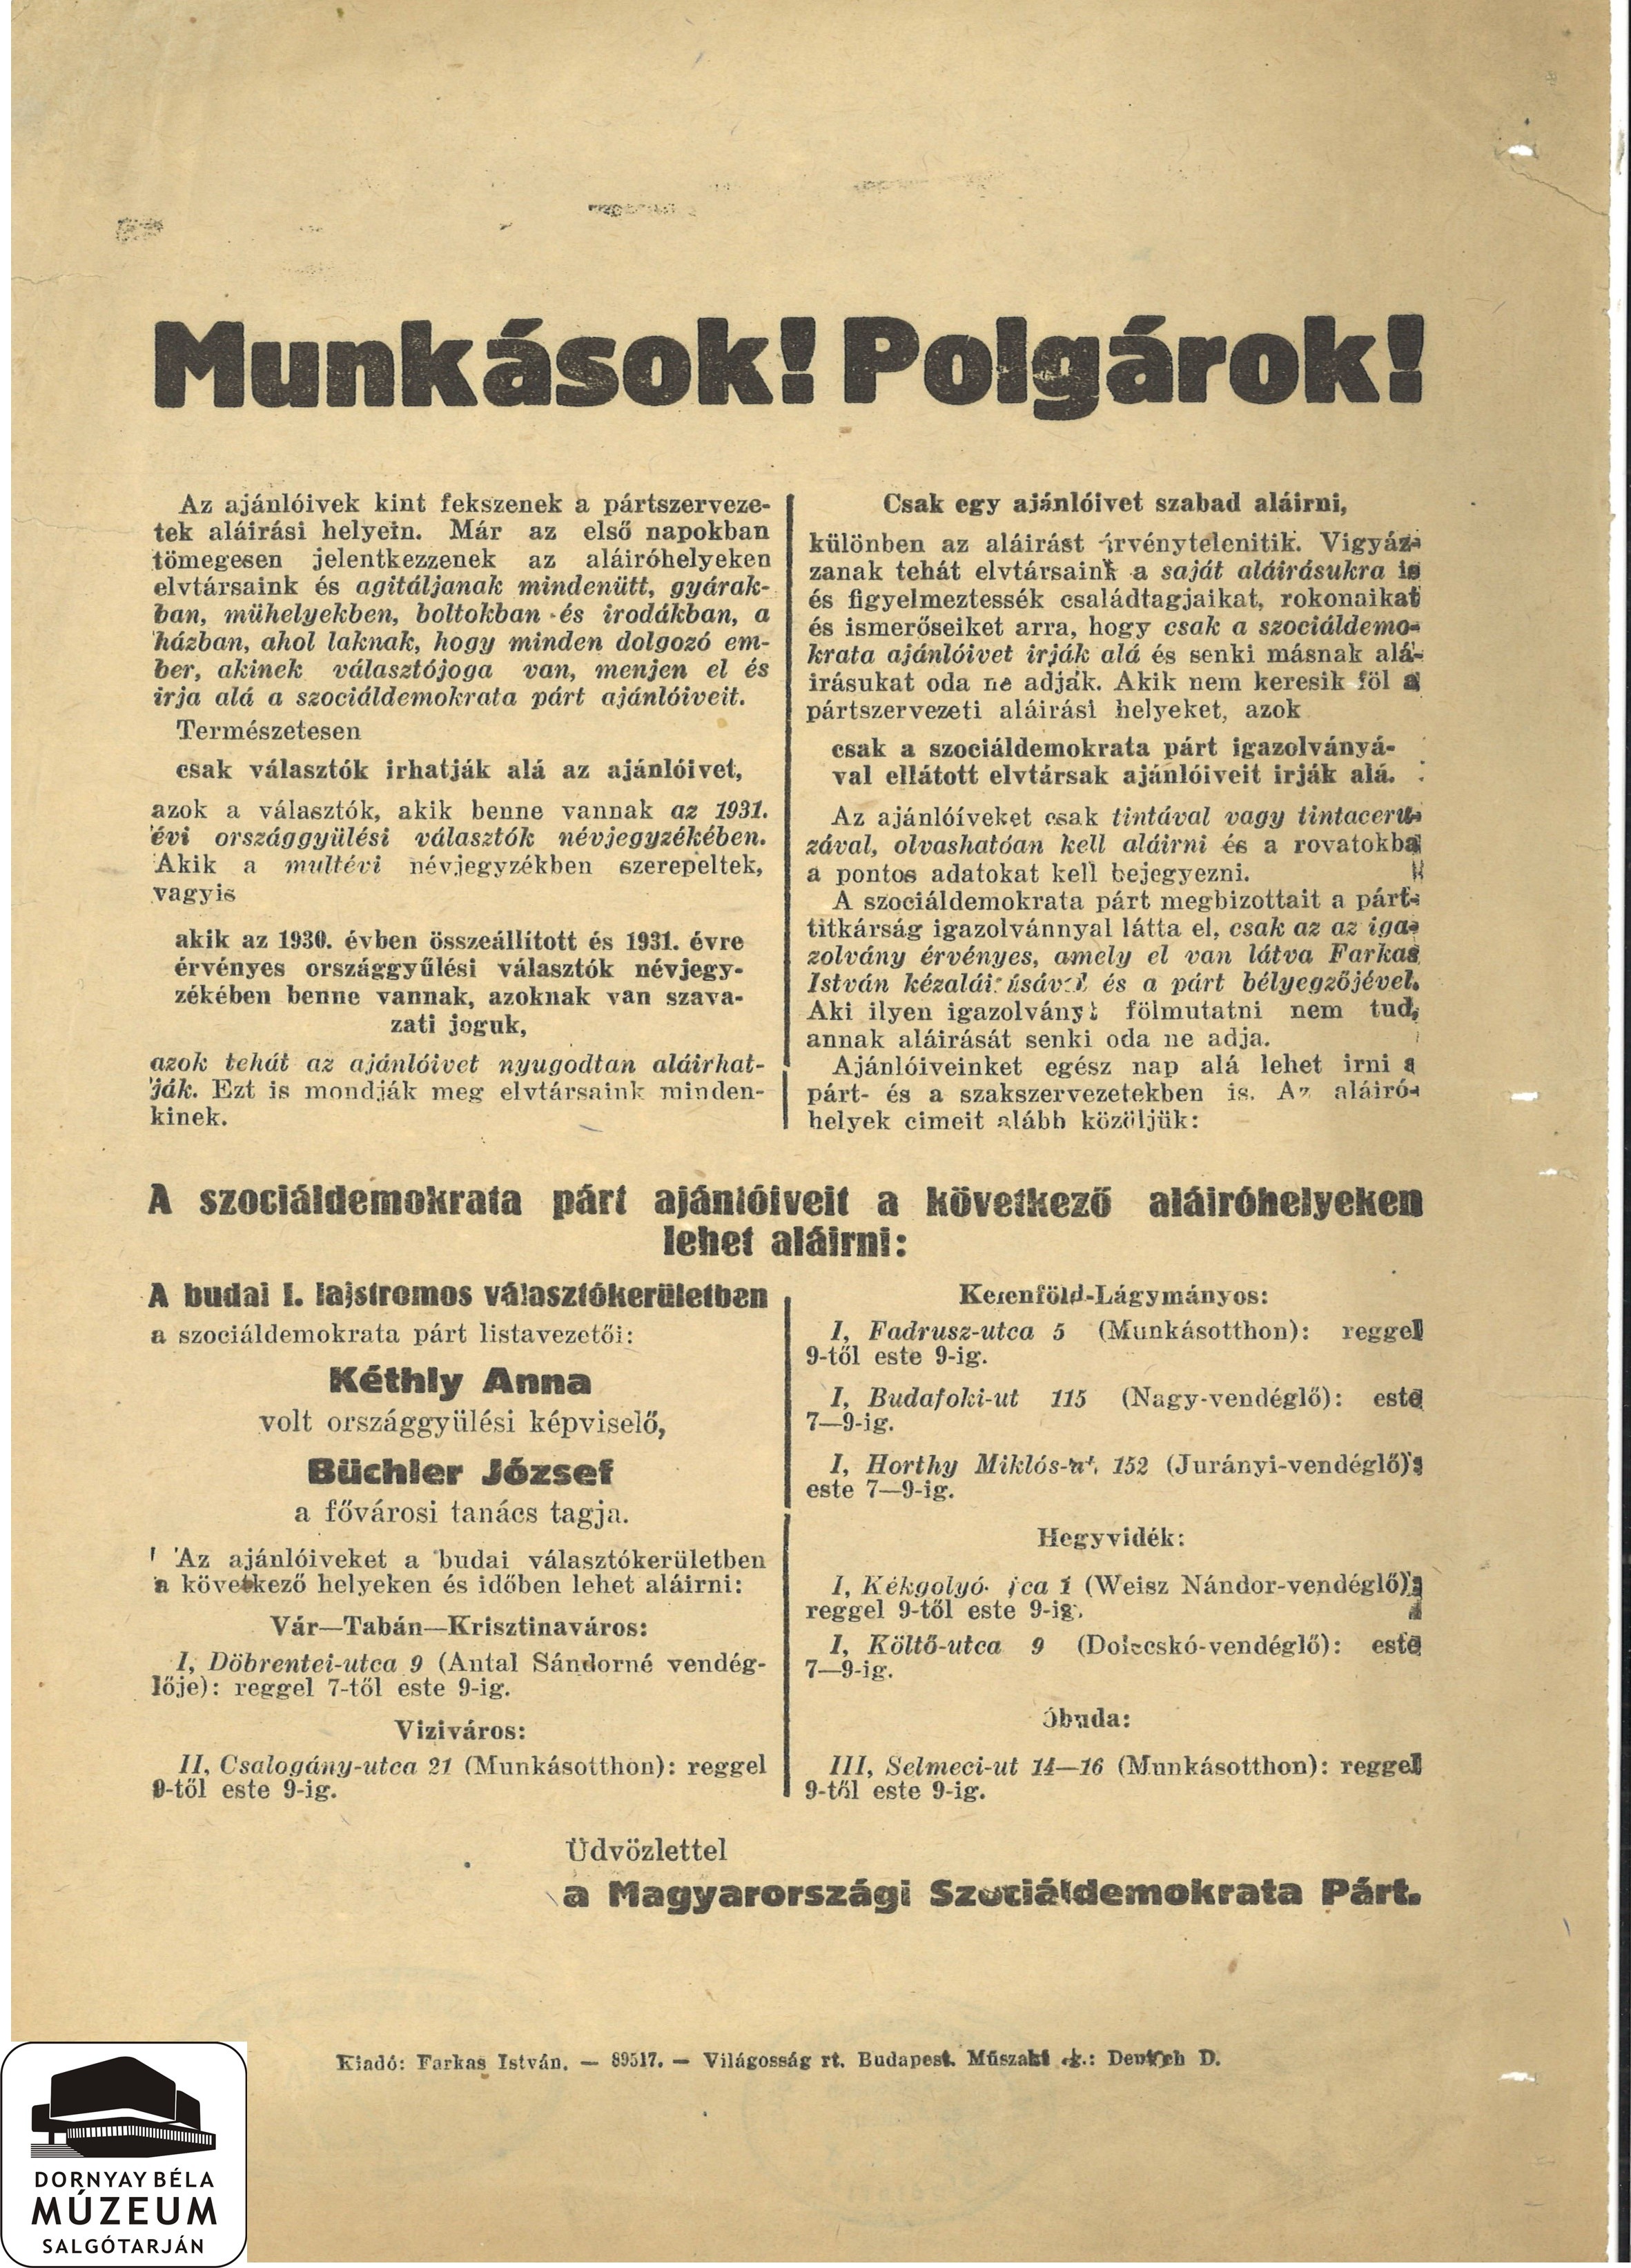 A Szociáldemokrata Párt vezetőségének felhívása ajánlóíveinek aláírására (Dornyay Béla Múzeum, Salgótarján CC BY-NC-SA)